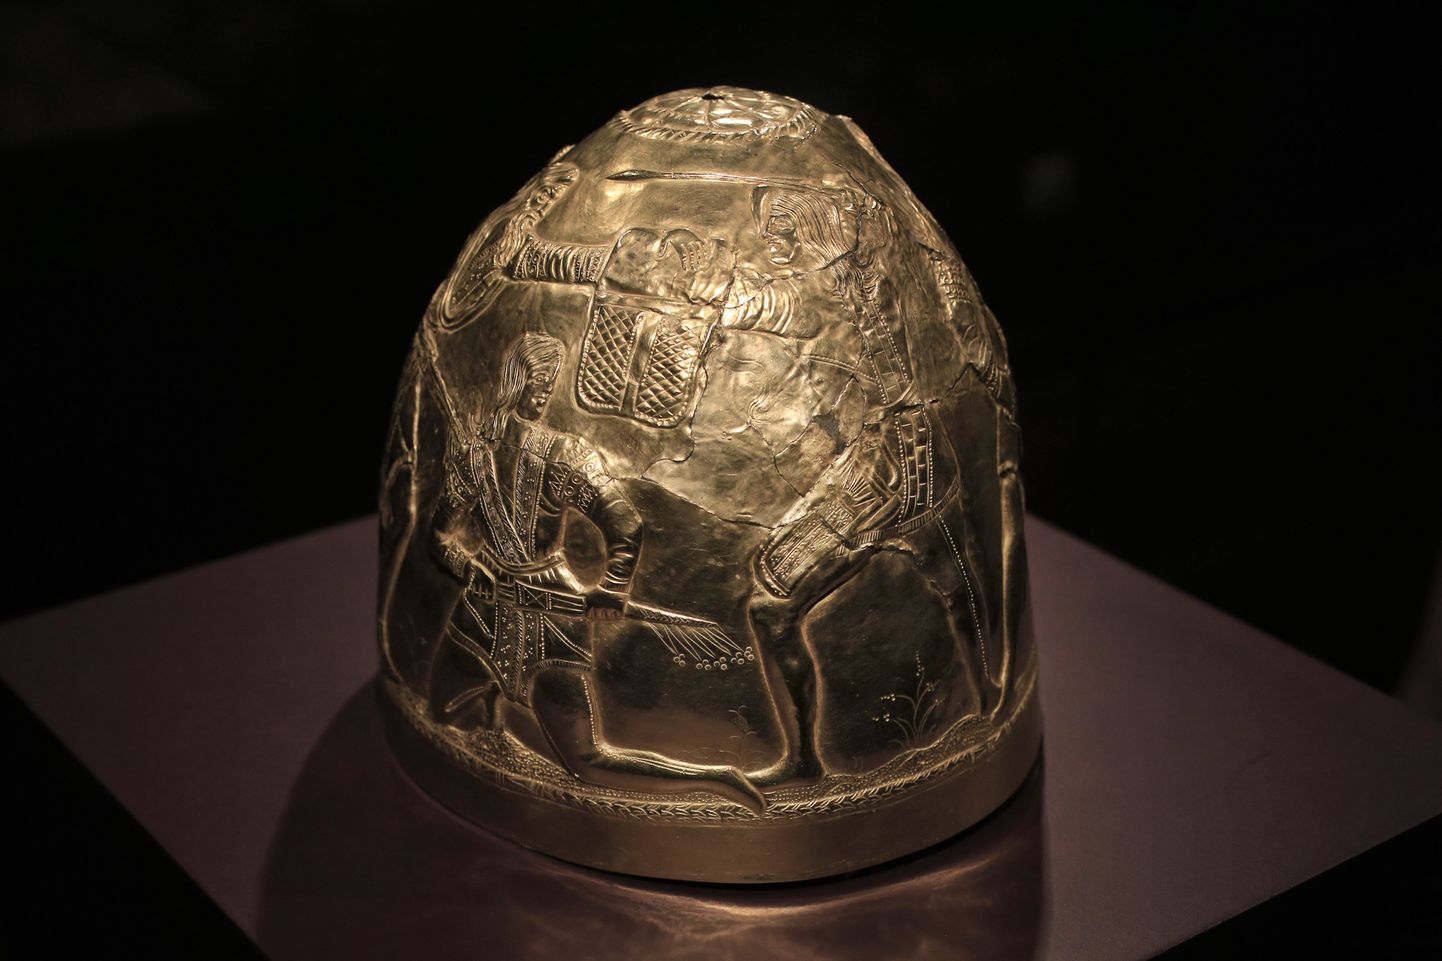 Kullast kiiver, mis on osa Hollandis eksponeeritud Krimmi sküütide kulla näitusest.